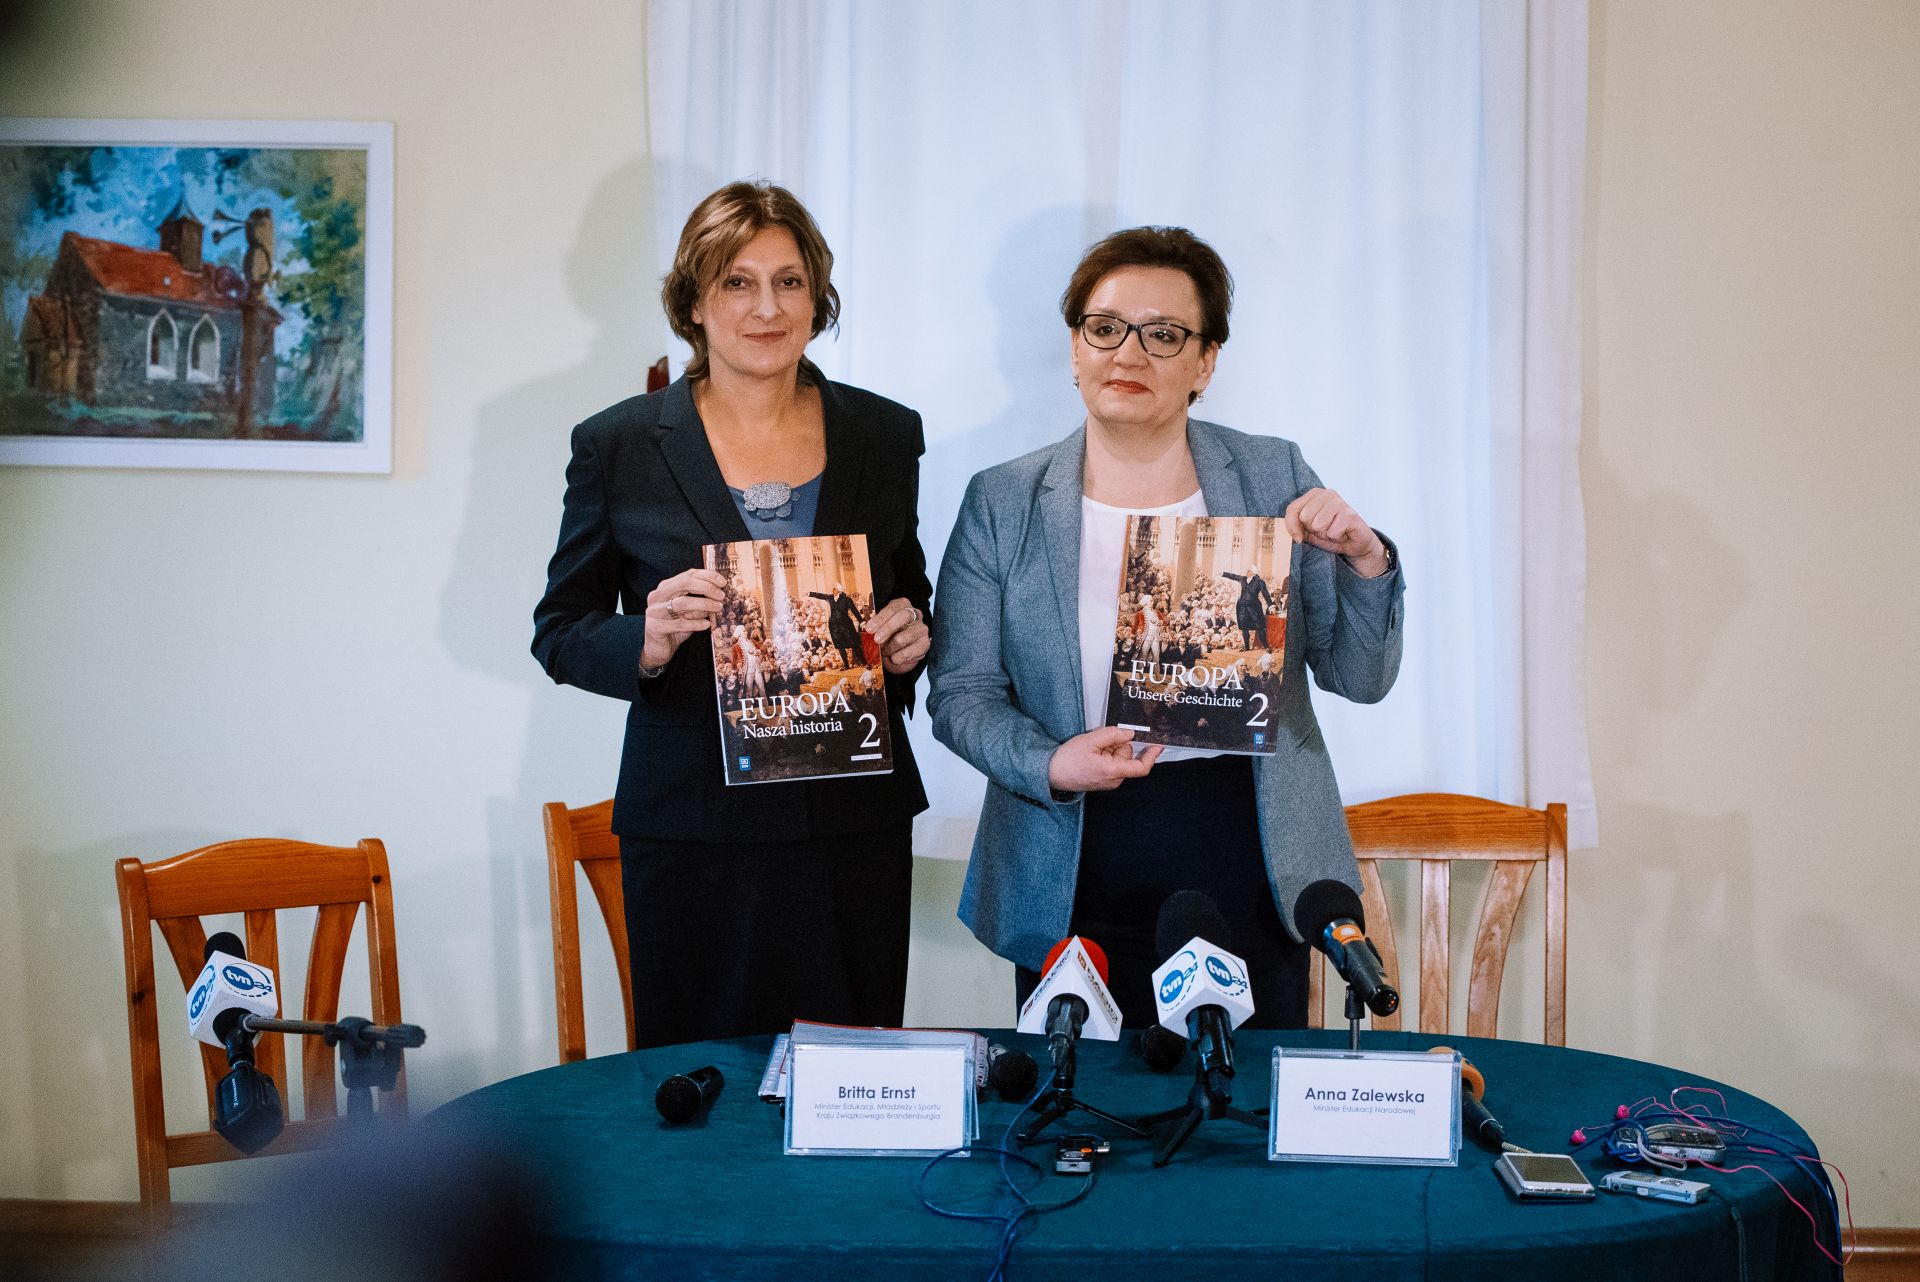 Bộ trưởng hai Bộ Giáo dục Đức và Ba Lan, bà Britta Ernst (Bang Brandenburg, Đức) và Anna Zalewska (Ba Lan) tại buổi công bố tập 2 bộ SGK lịch sử chung “Châu Âu - Lịch sử của chúng ta”. Ảnh: Marcin Biodrowski/ GIS